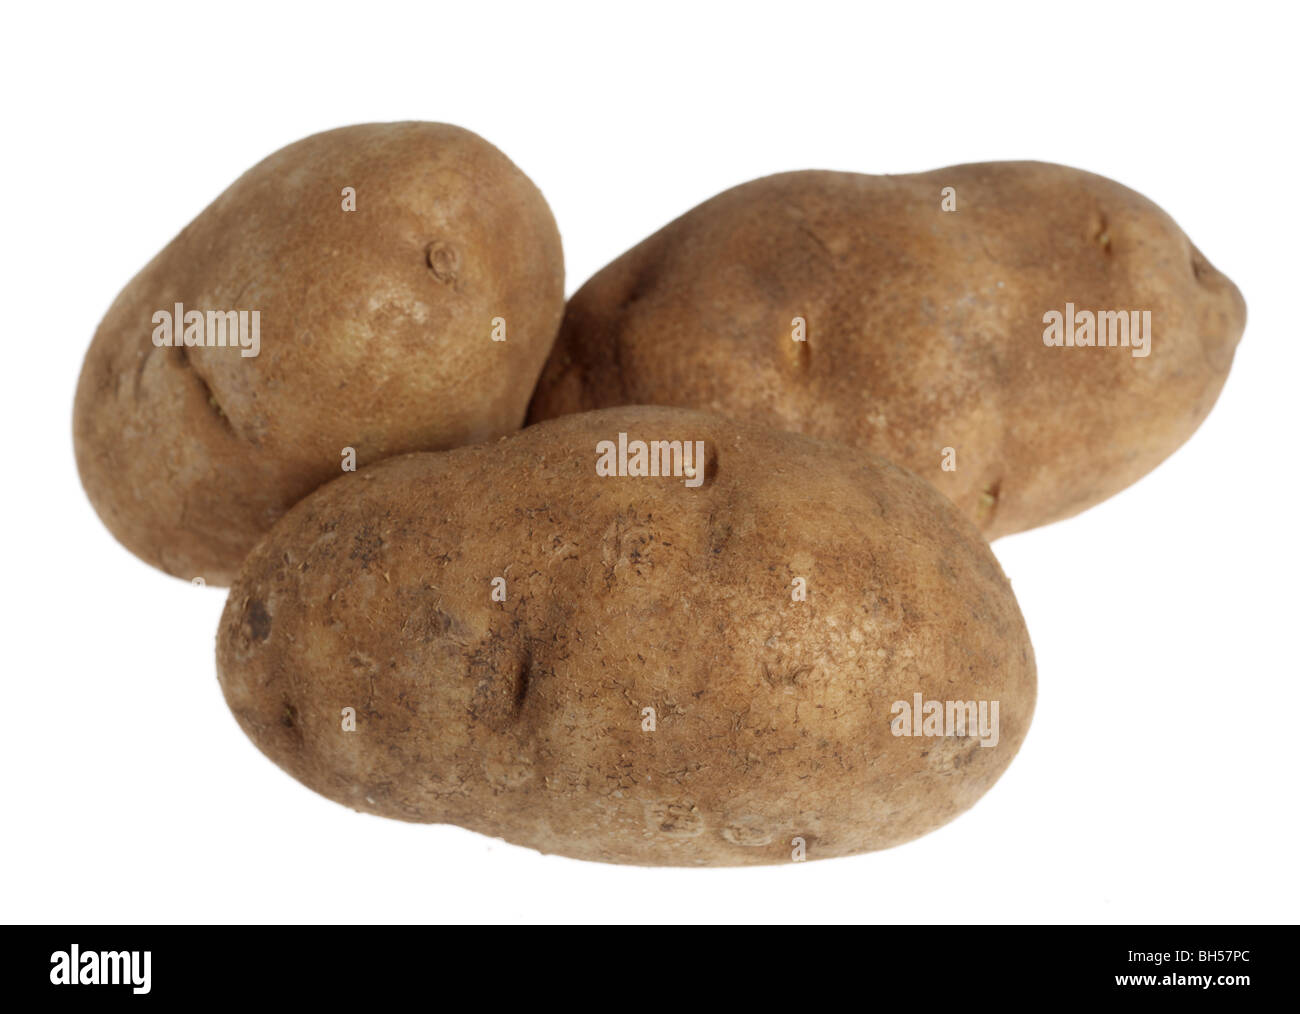 Trois pommes de terre russet over a white background Banque D'Images